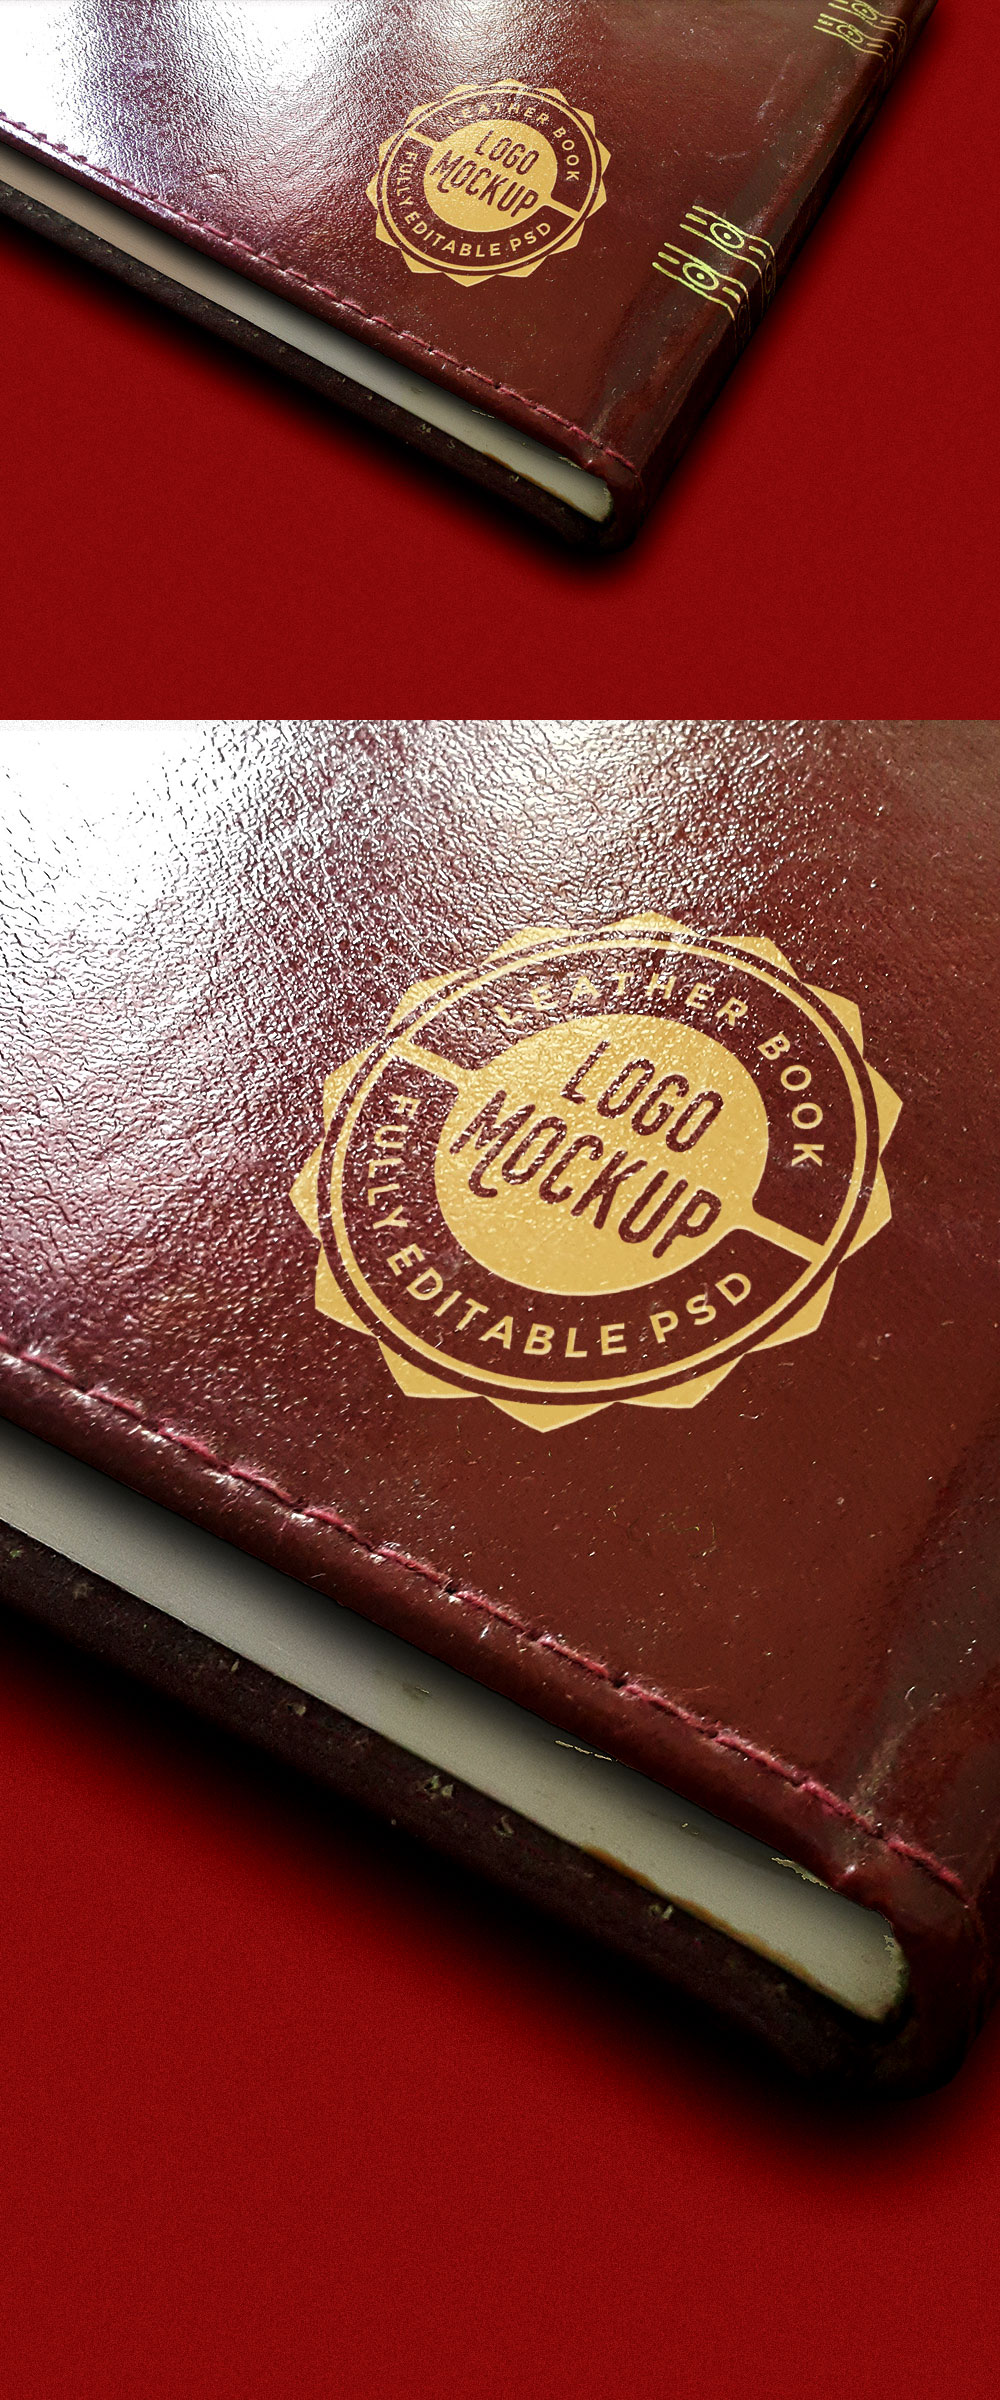 Vintage Leather Book Logo MockUp Free Download